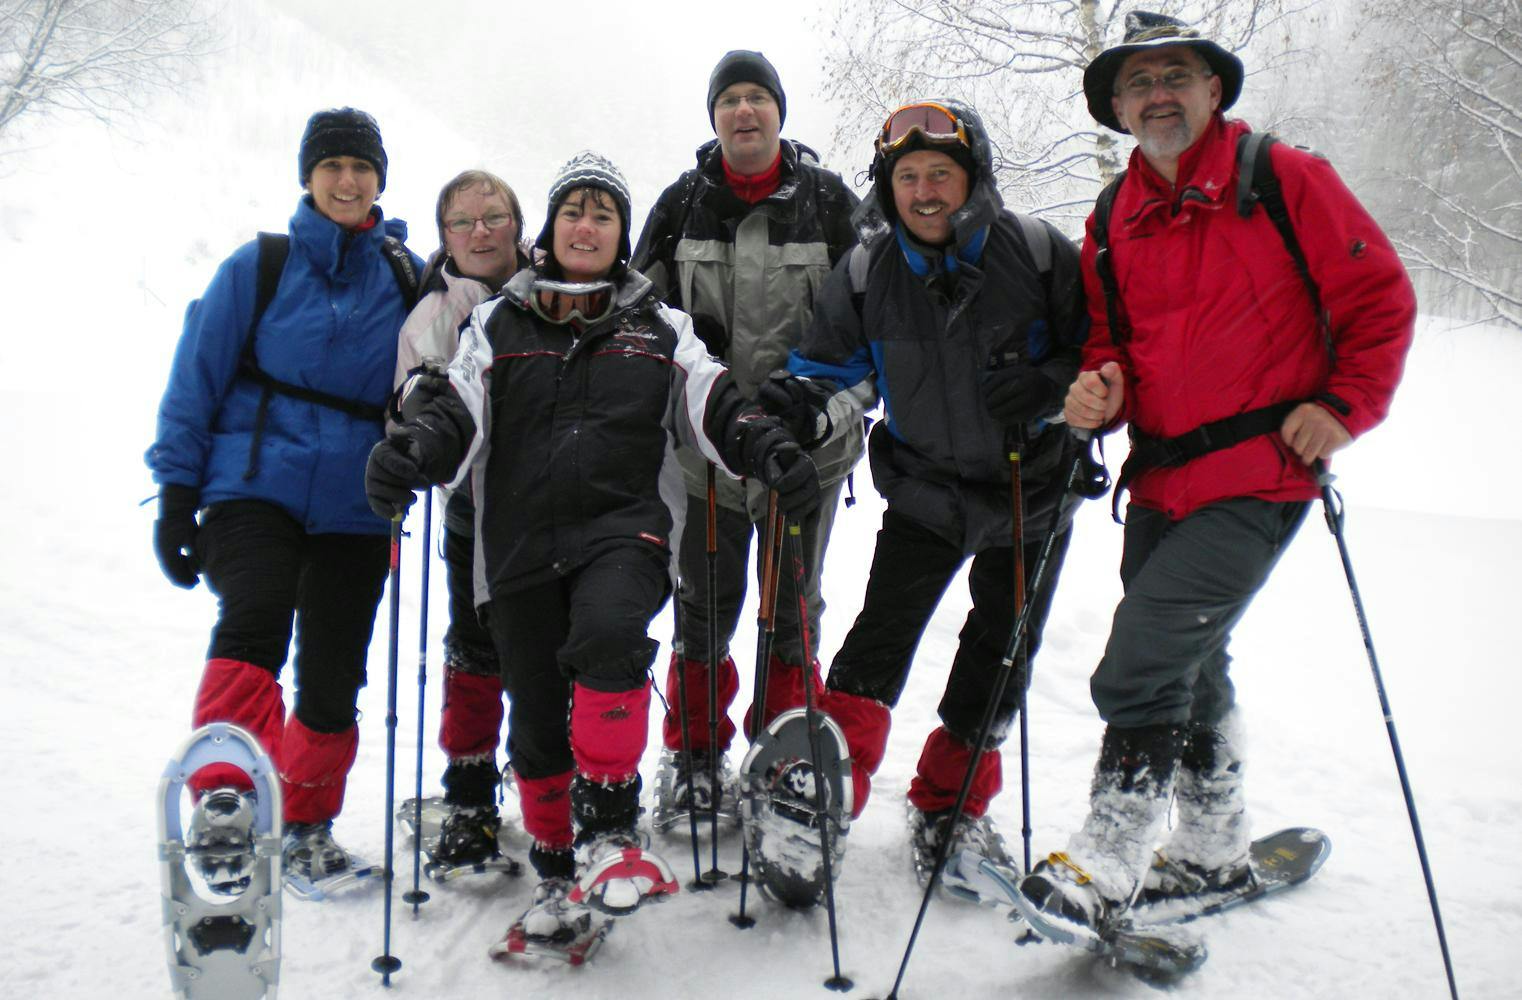 Winterwandern | zauberhafte Schneeschuhtour an der Rax